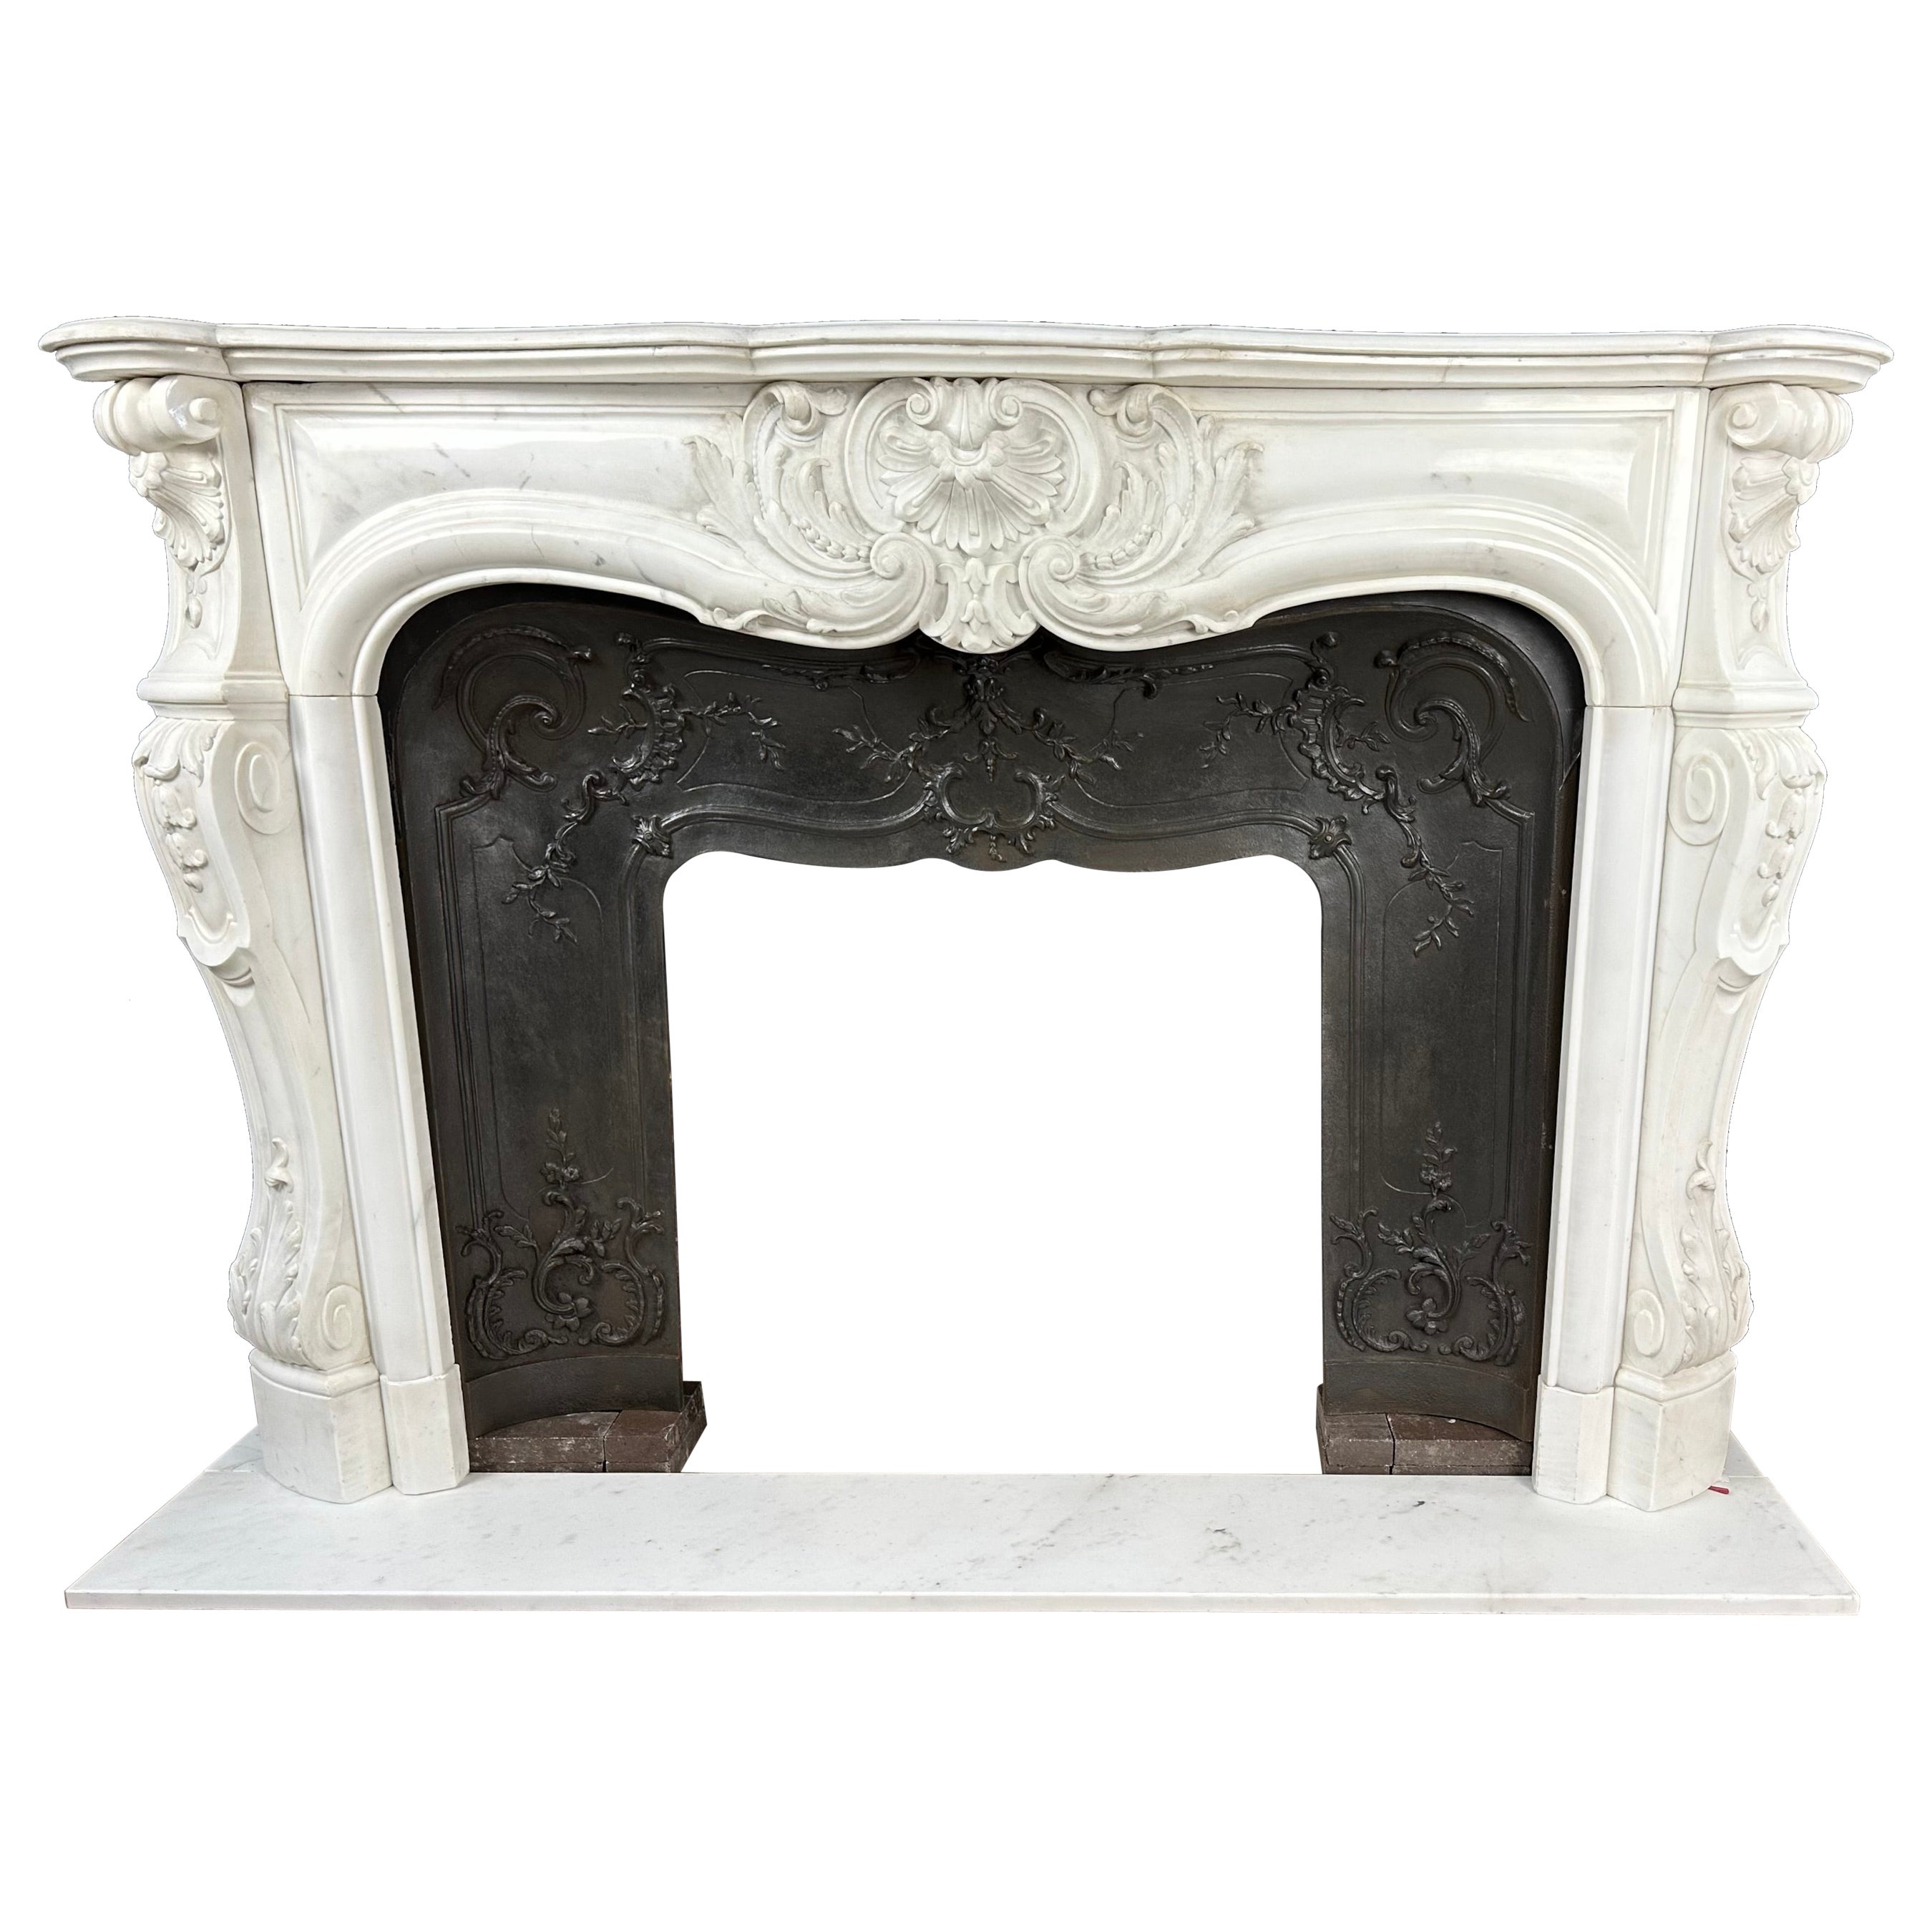  Insert de cheminée française ancienne à façade coquillage en marbre blanc